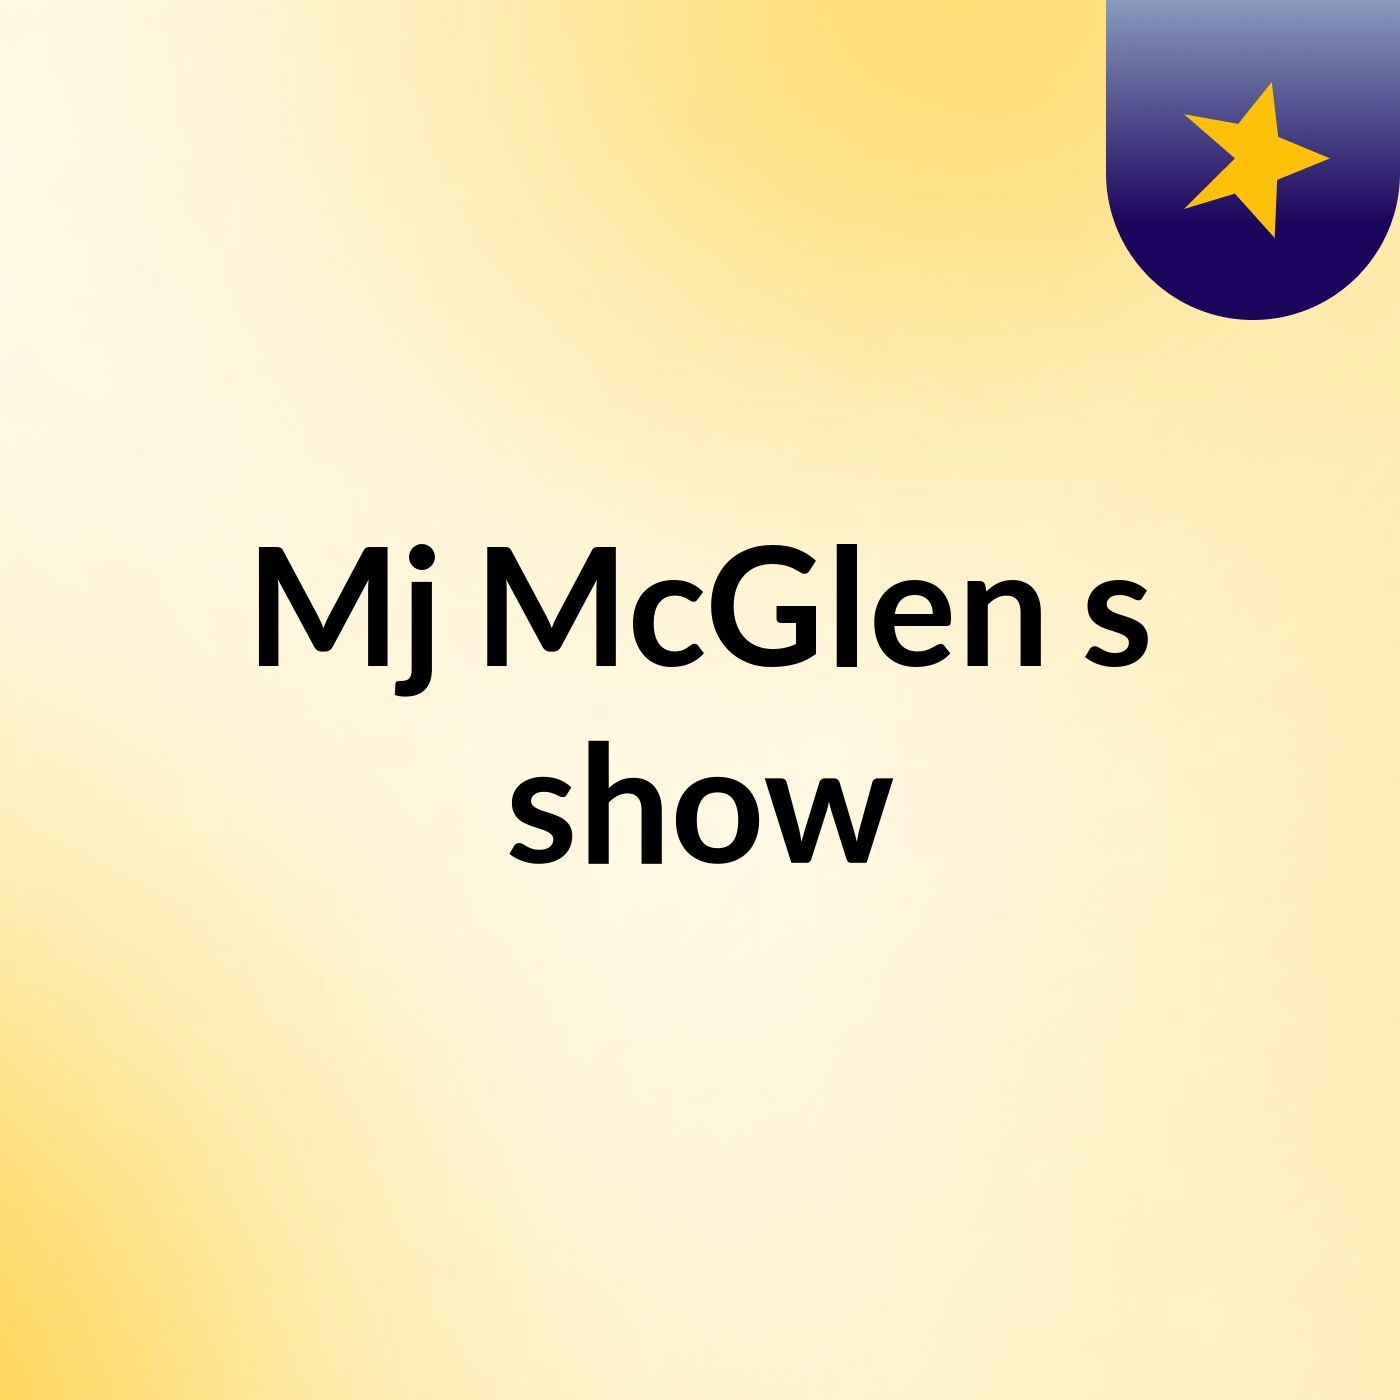 Episode 3 - Mj McGlen's show